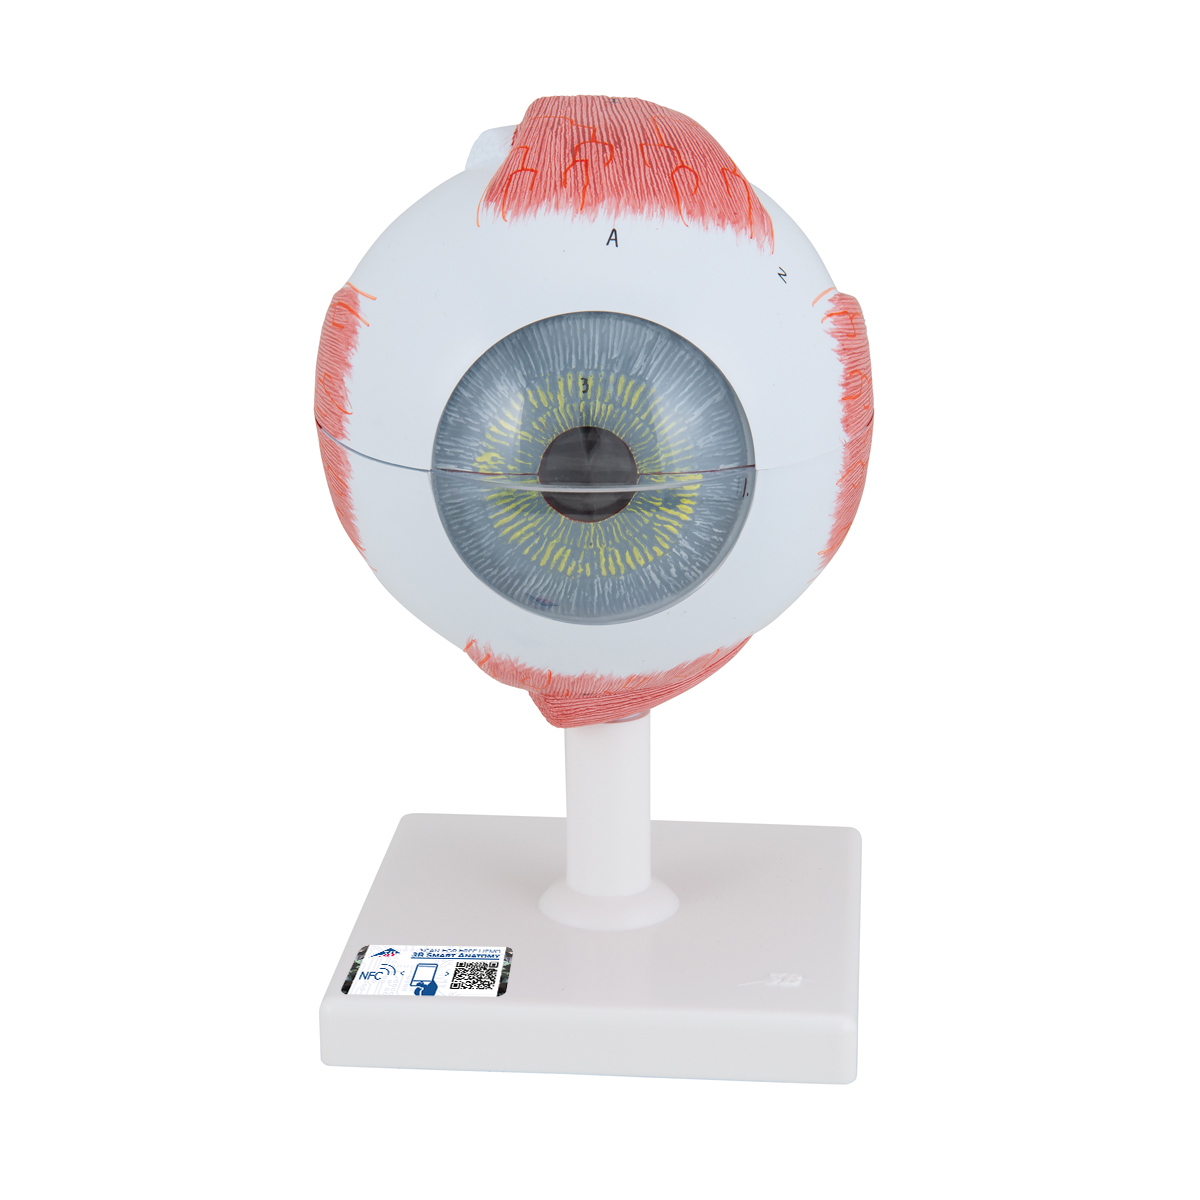 Augenmodell, 5-fache Größe, 6-teilig - 3B Smart Anatomy, Bestellnummer 1000255, F10, 3B Scientific